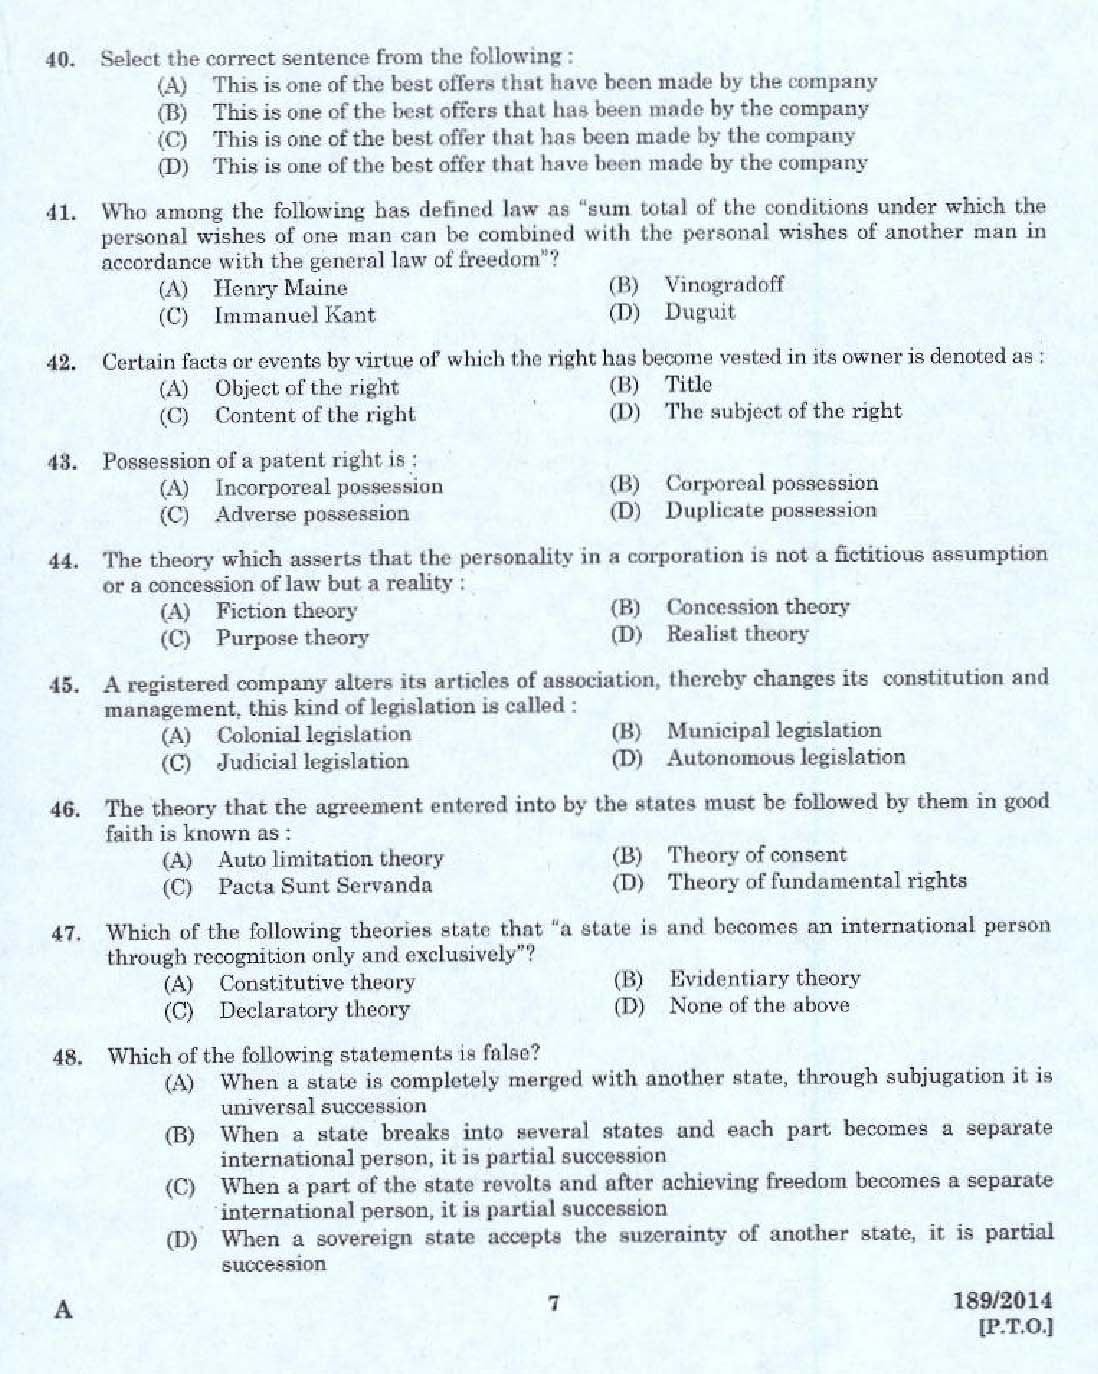 KPSC Legal Officer Exam 2014 Code 1892014 5